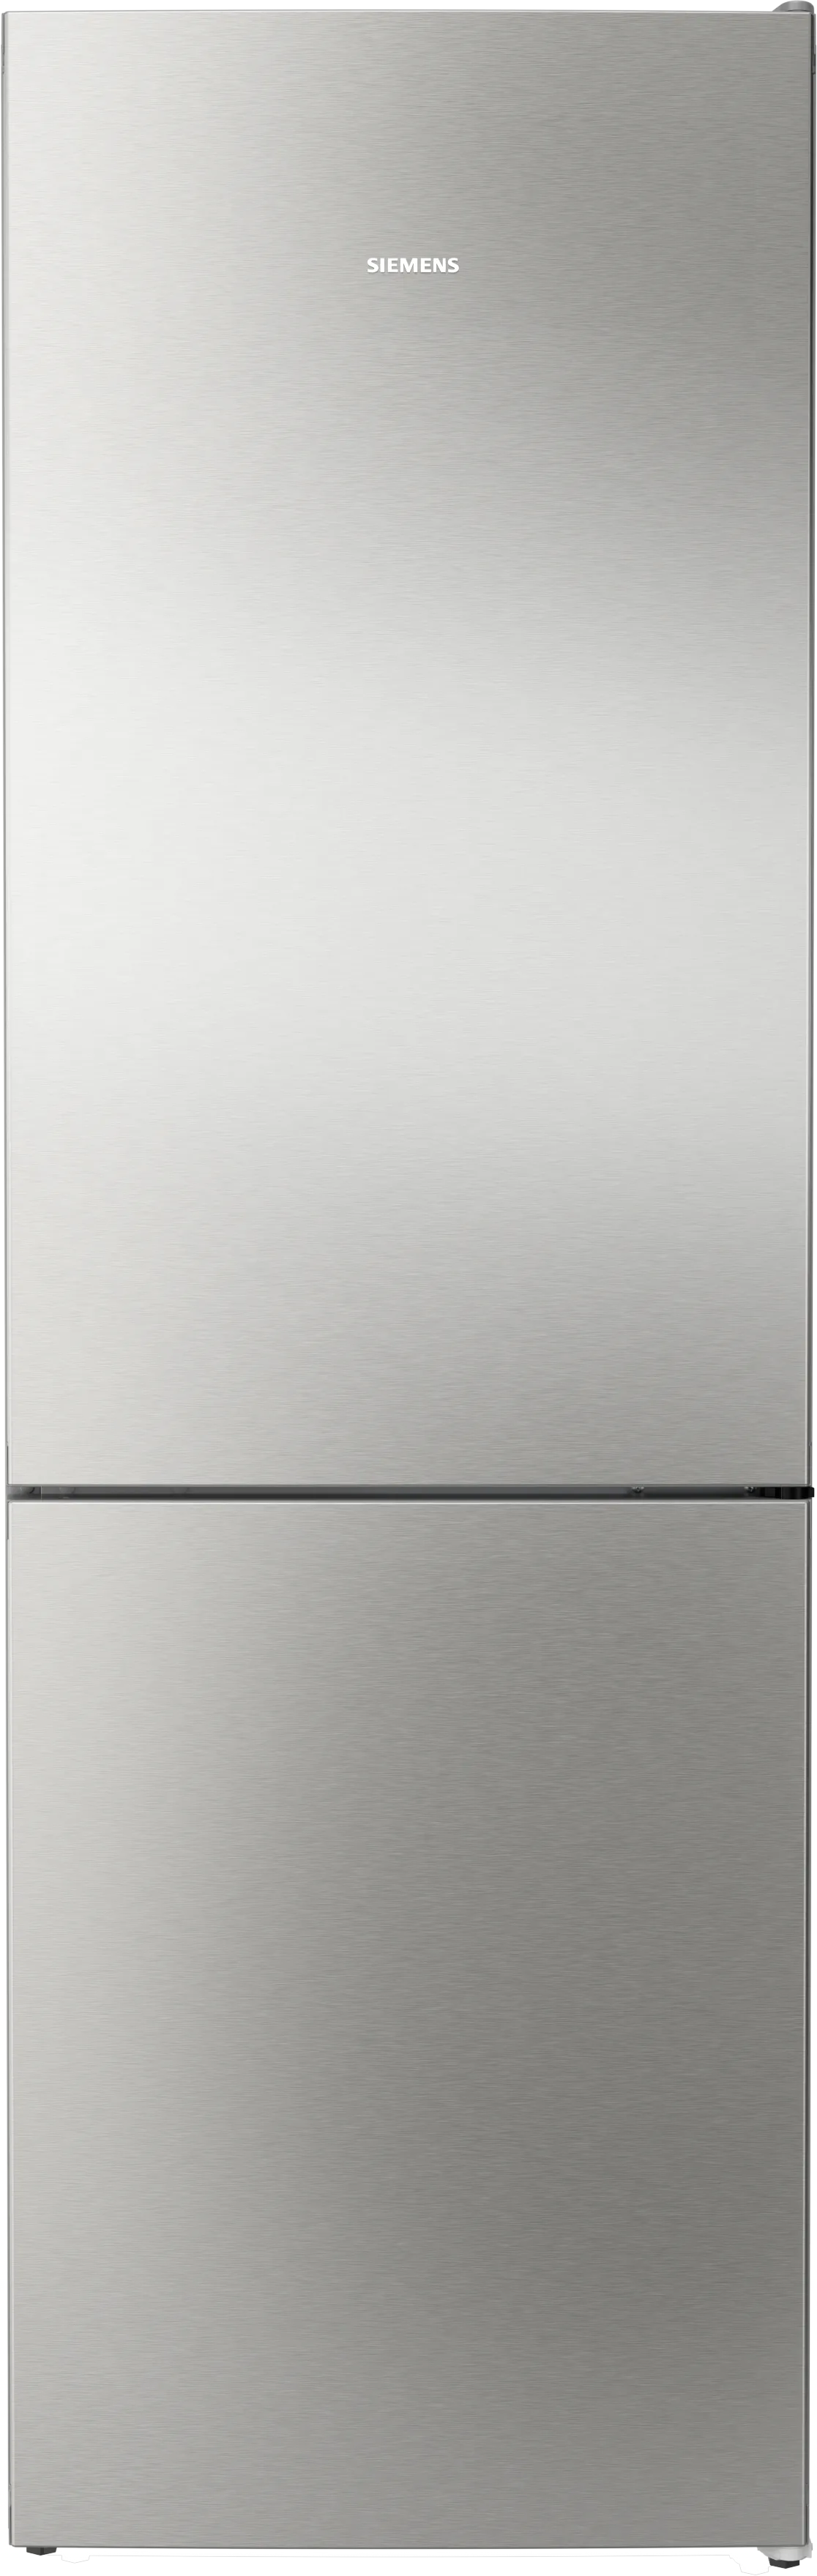 iQ300 Freistehende Kühl-Gefrier-Kombination mit Gefrierbereich unten 186 x 60 cm Edelstahl antiFingerprint 